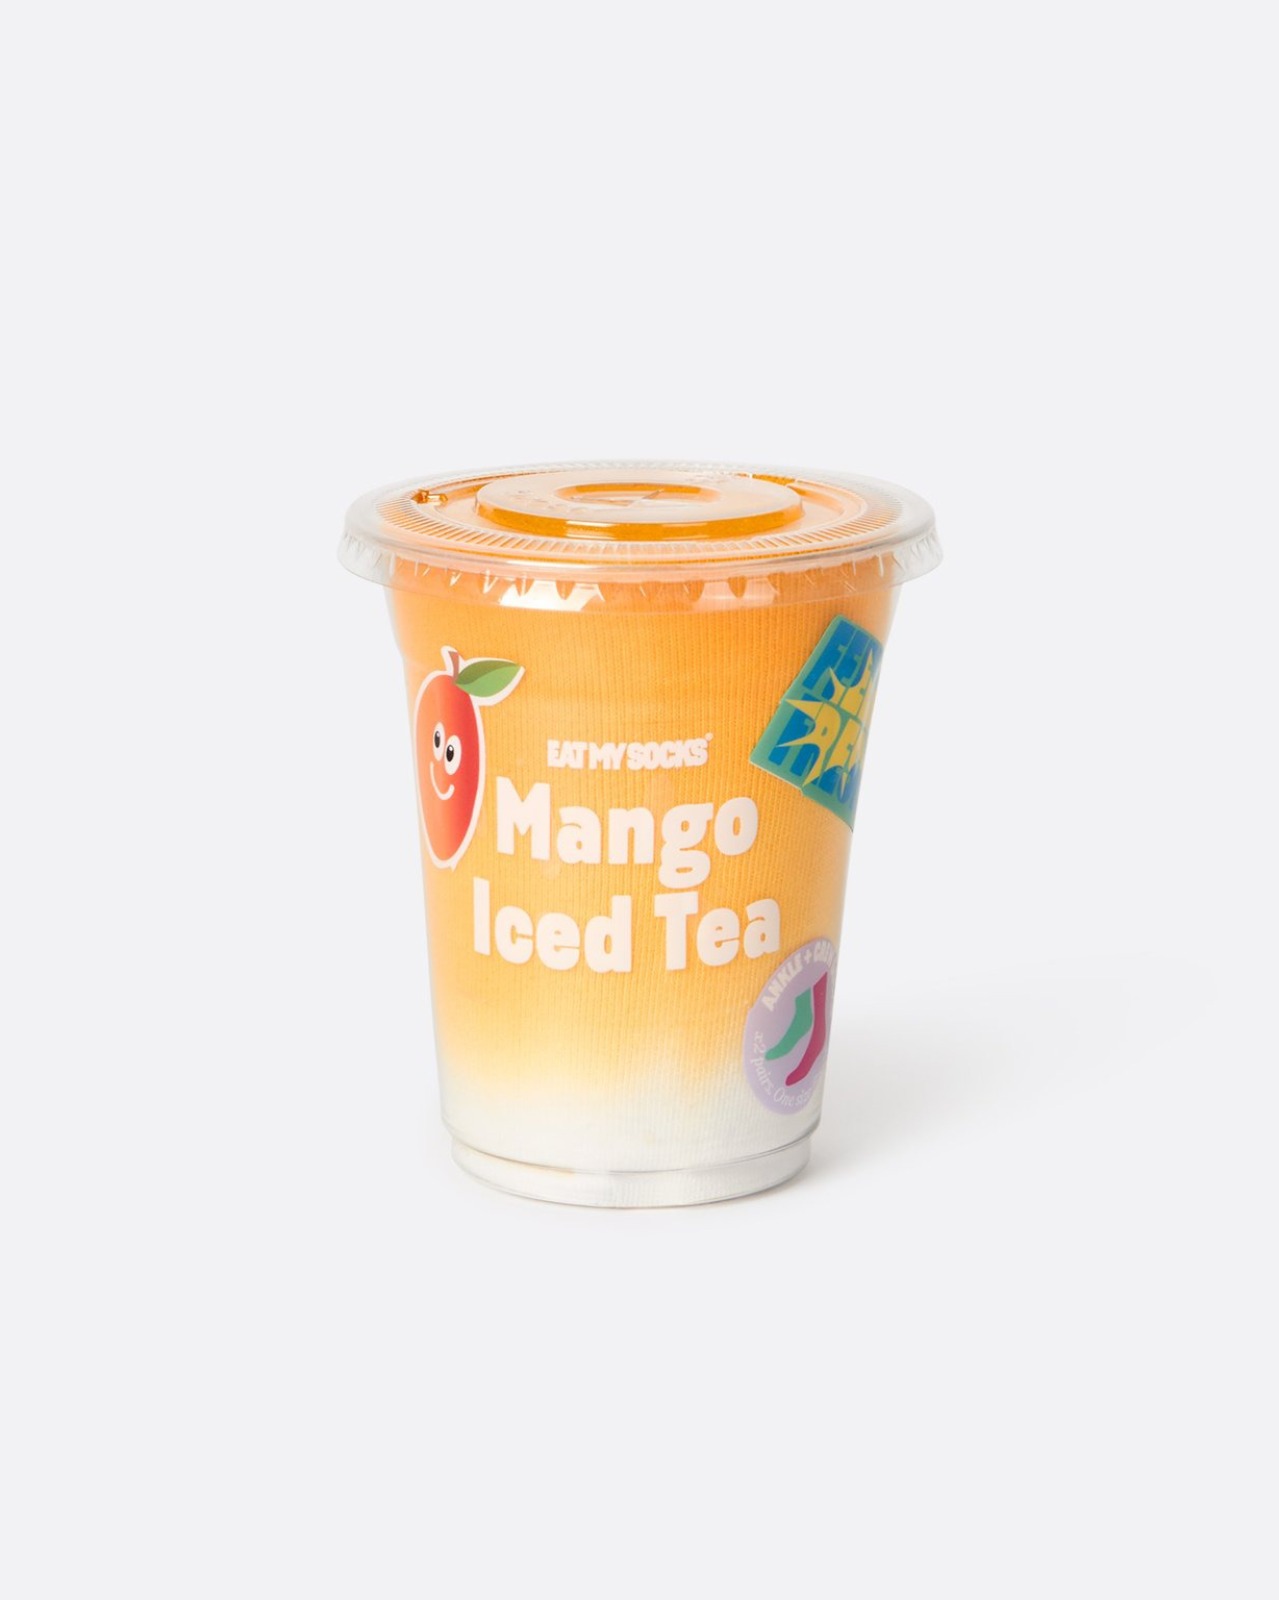 [EAT MY SOCKS] Iced Tea, Mango (2 pairs)